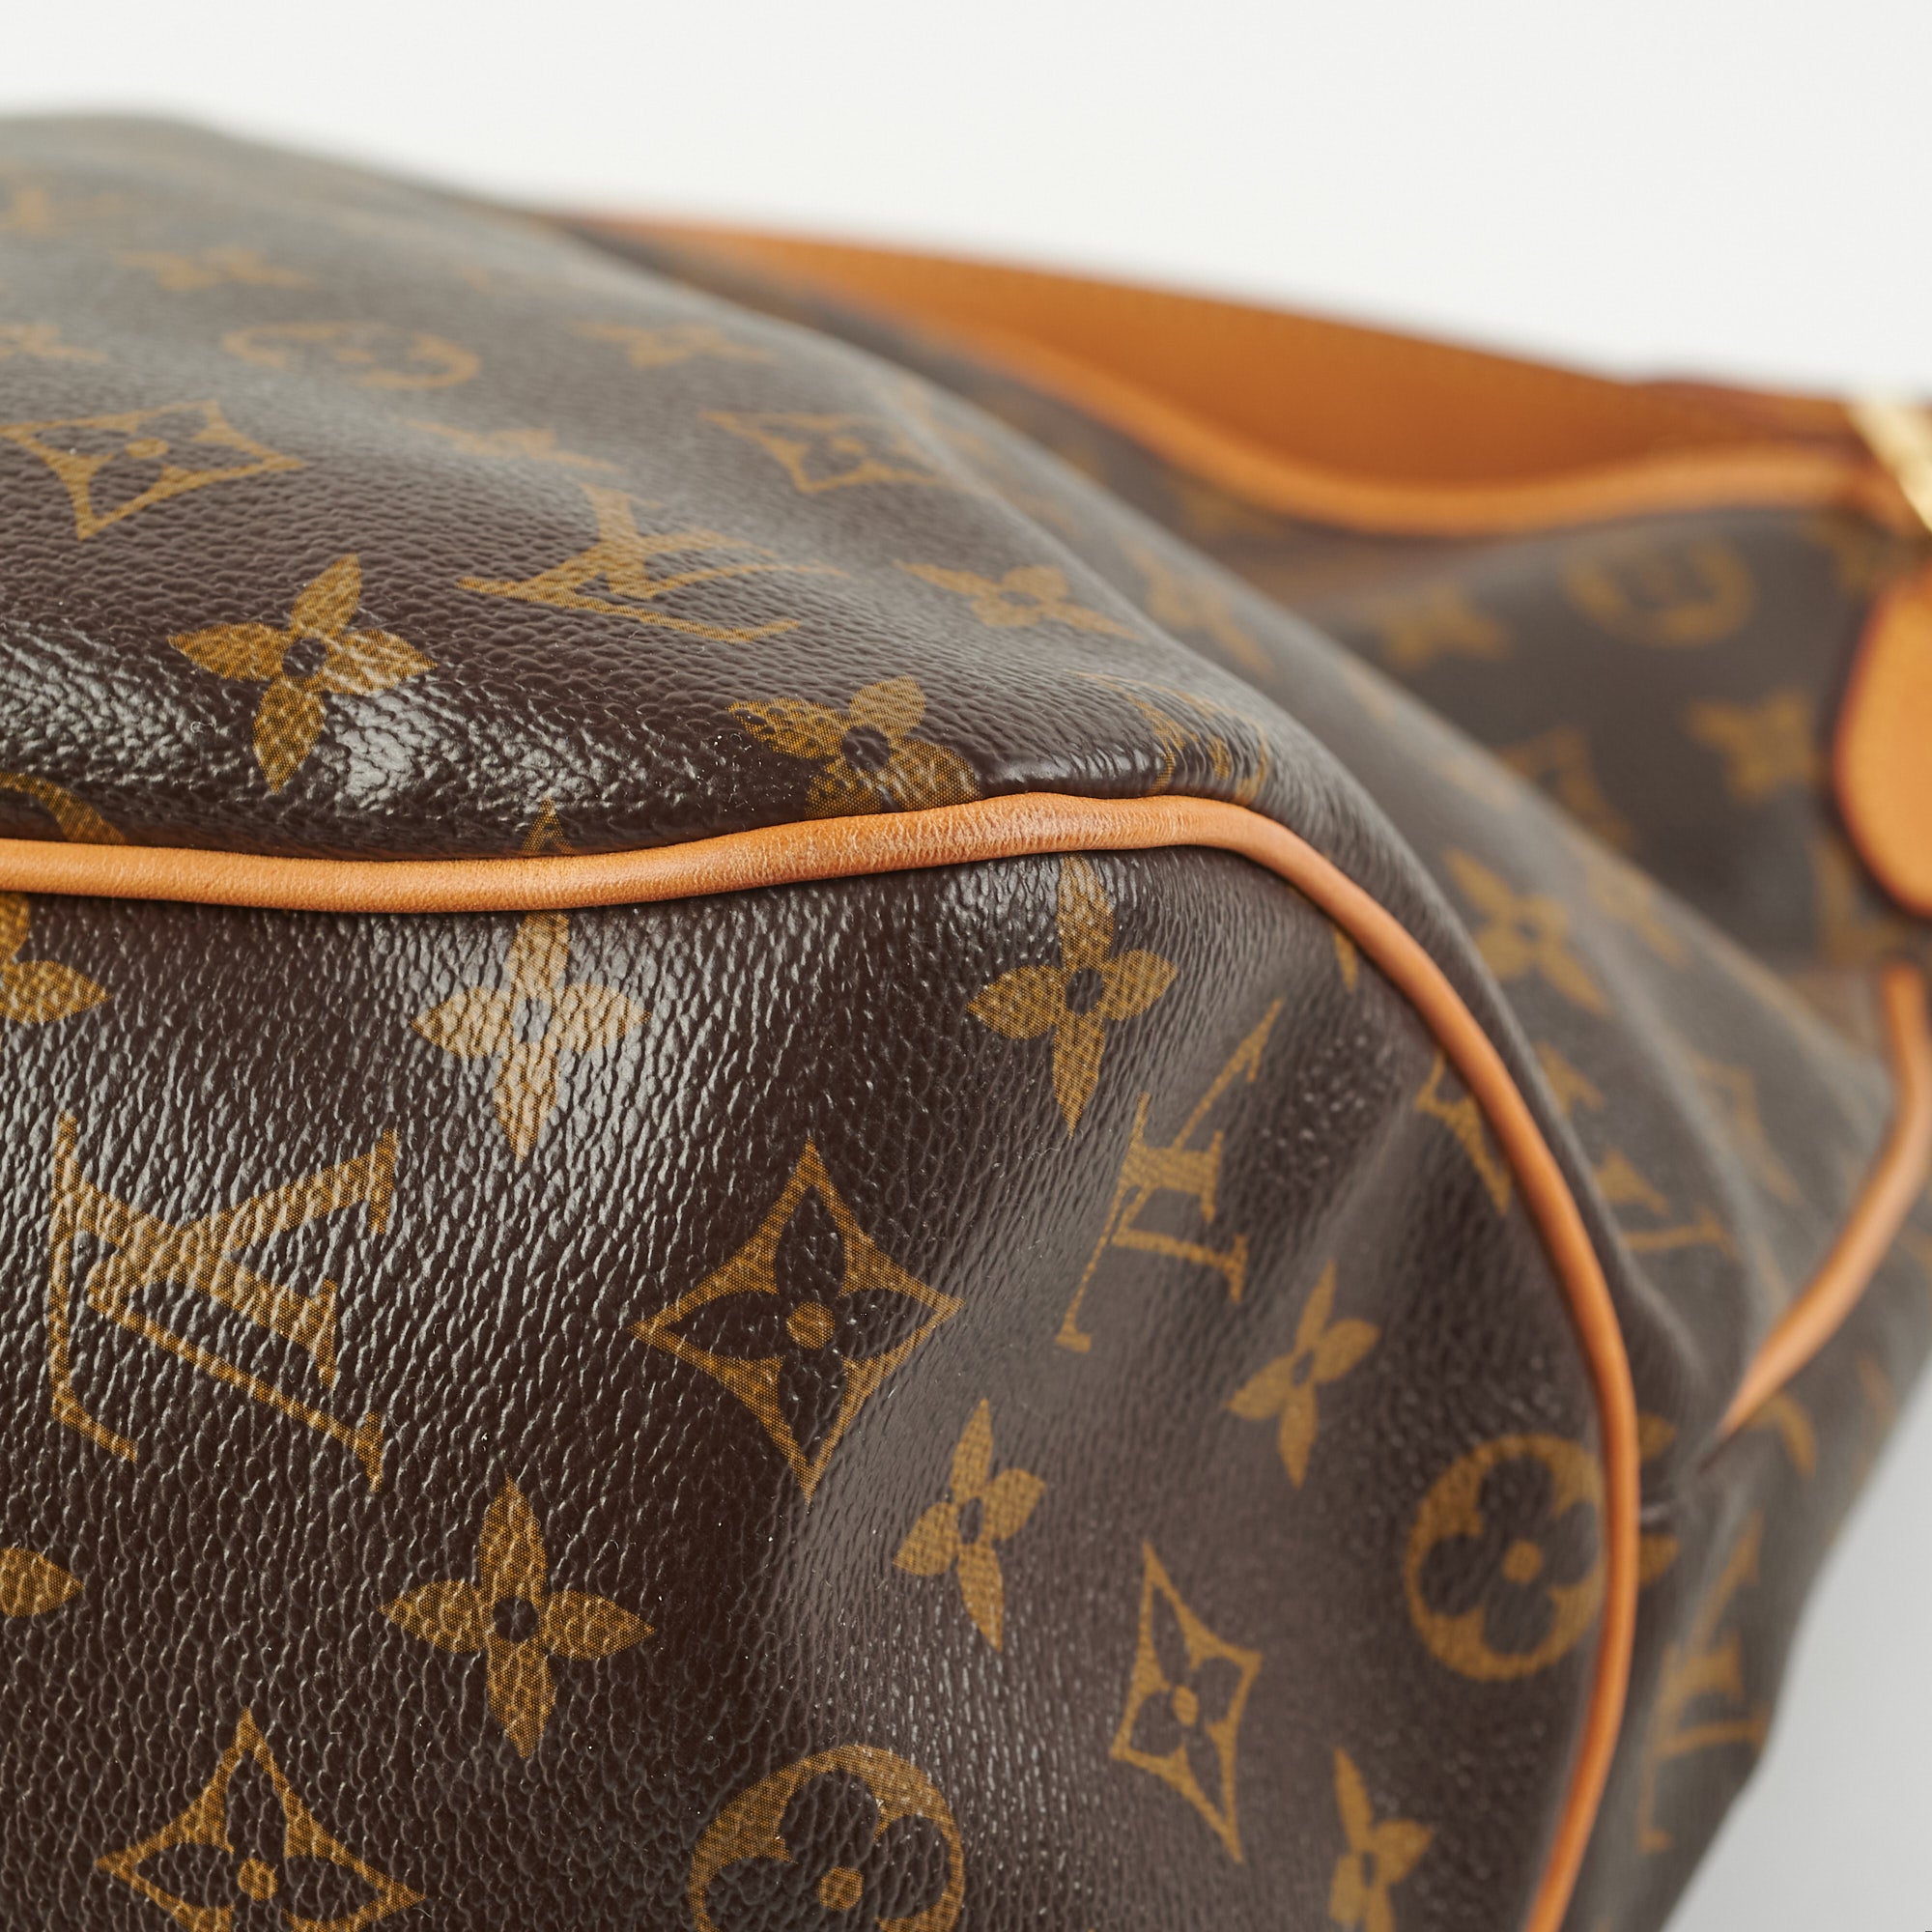 Louis Vuitton, Bags, Sold Louis Vuitton Delightful Mm